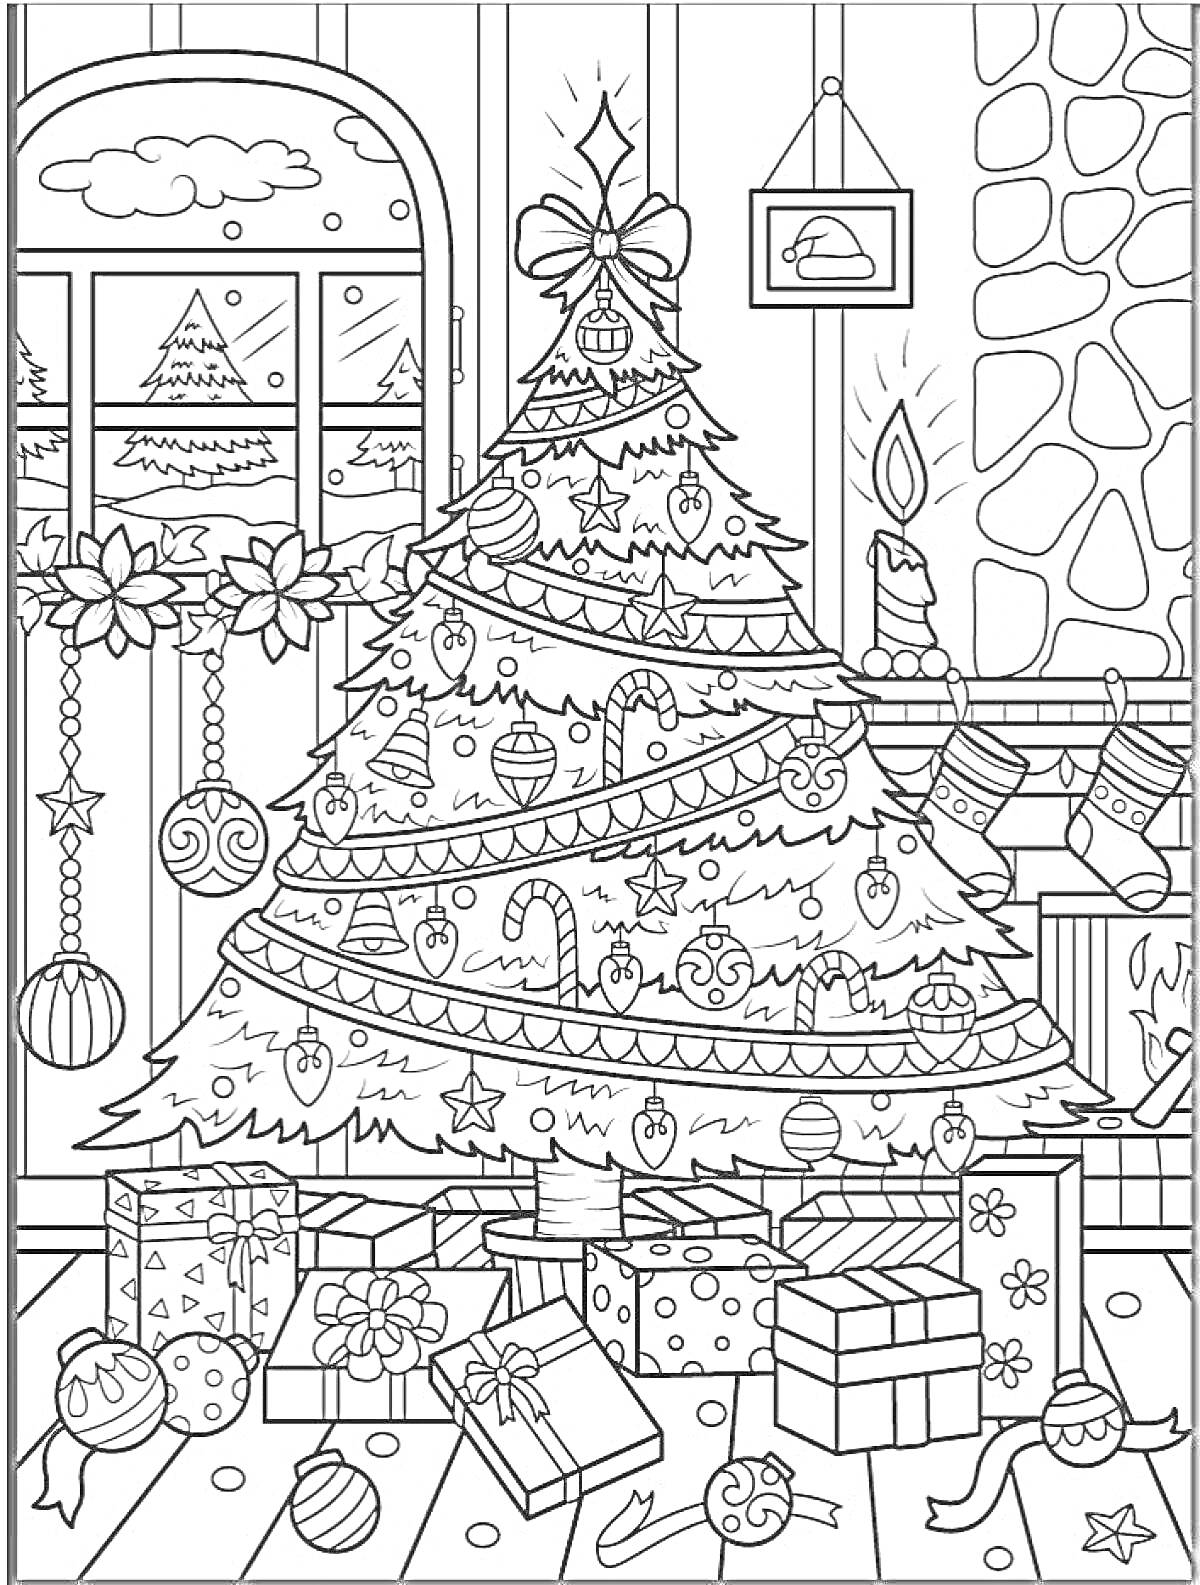 Новогодняя ночь. Наряженная ёлка с игрушками, гирляндами и звездой на верху, окружённая подарками и украшениями. Праздничный камин с горящей свечой, окно с видом на снежную ёлку, подвешенные новогодние украшения и новогодняя гирлянда.